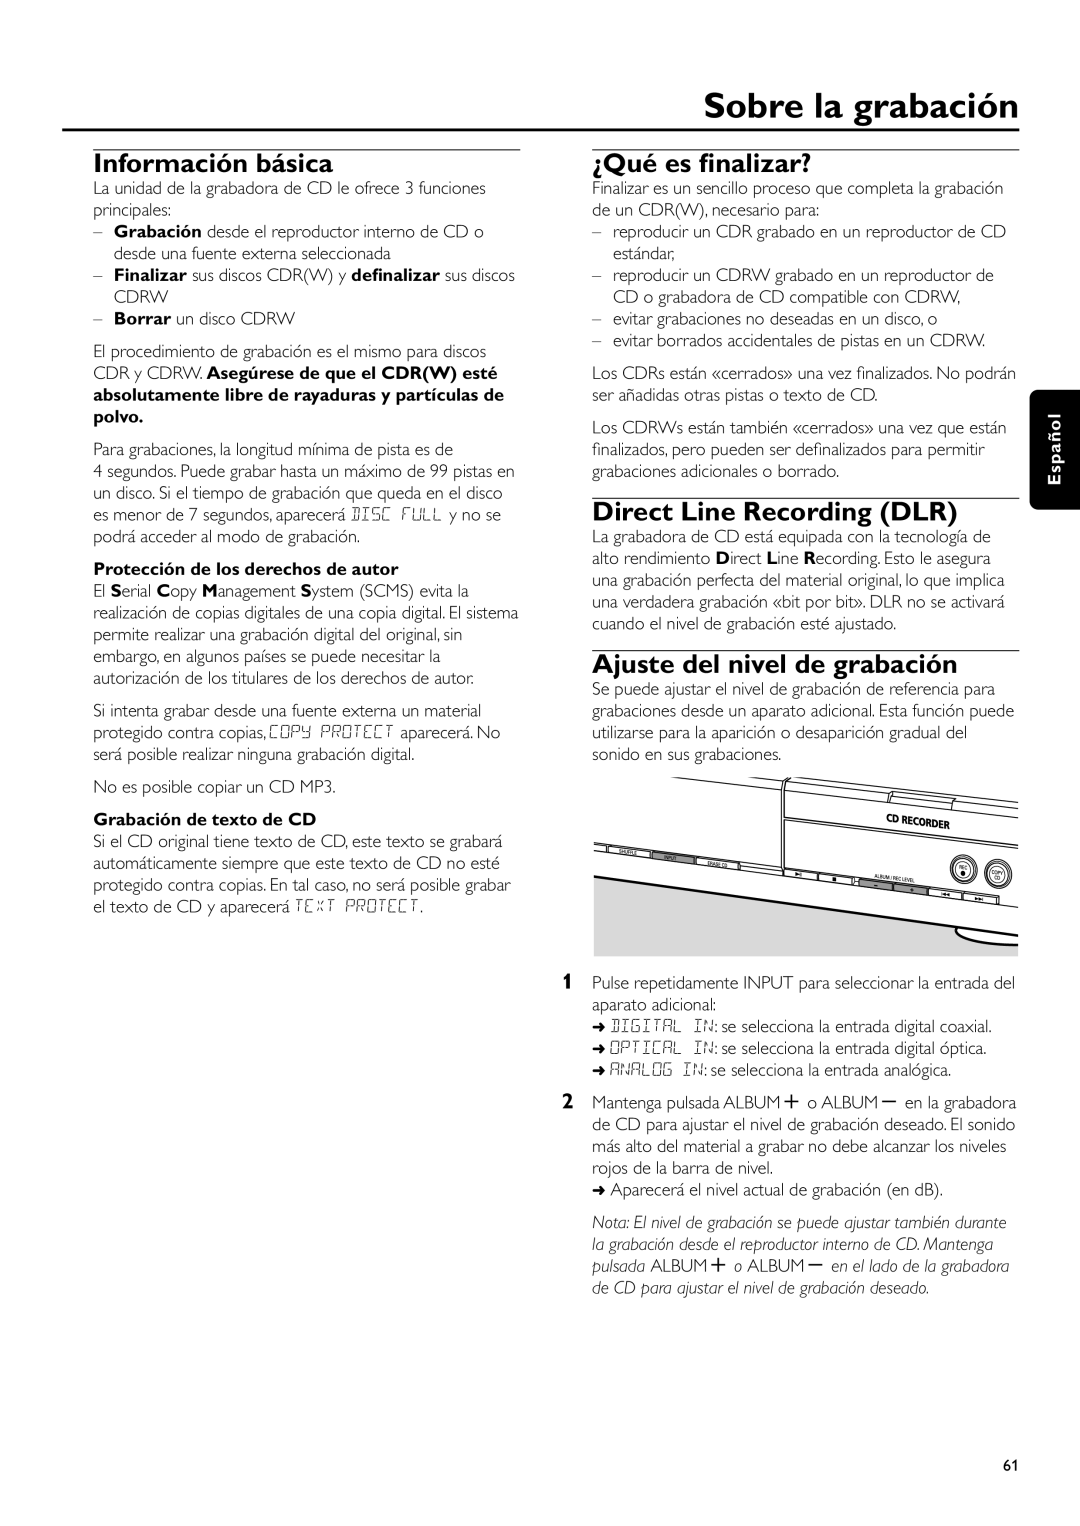 Philips CDR-795 manual Sobre la grabación, Información básica, ¿Qué es ﬁnalizar?, Ajuste del nivel de grabación, Español 